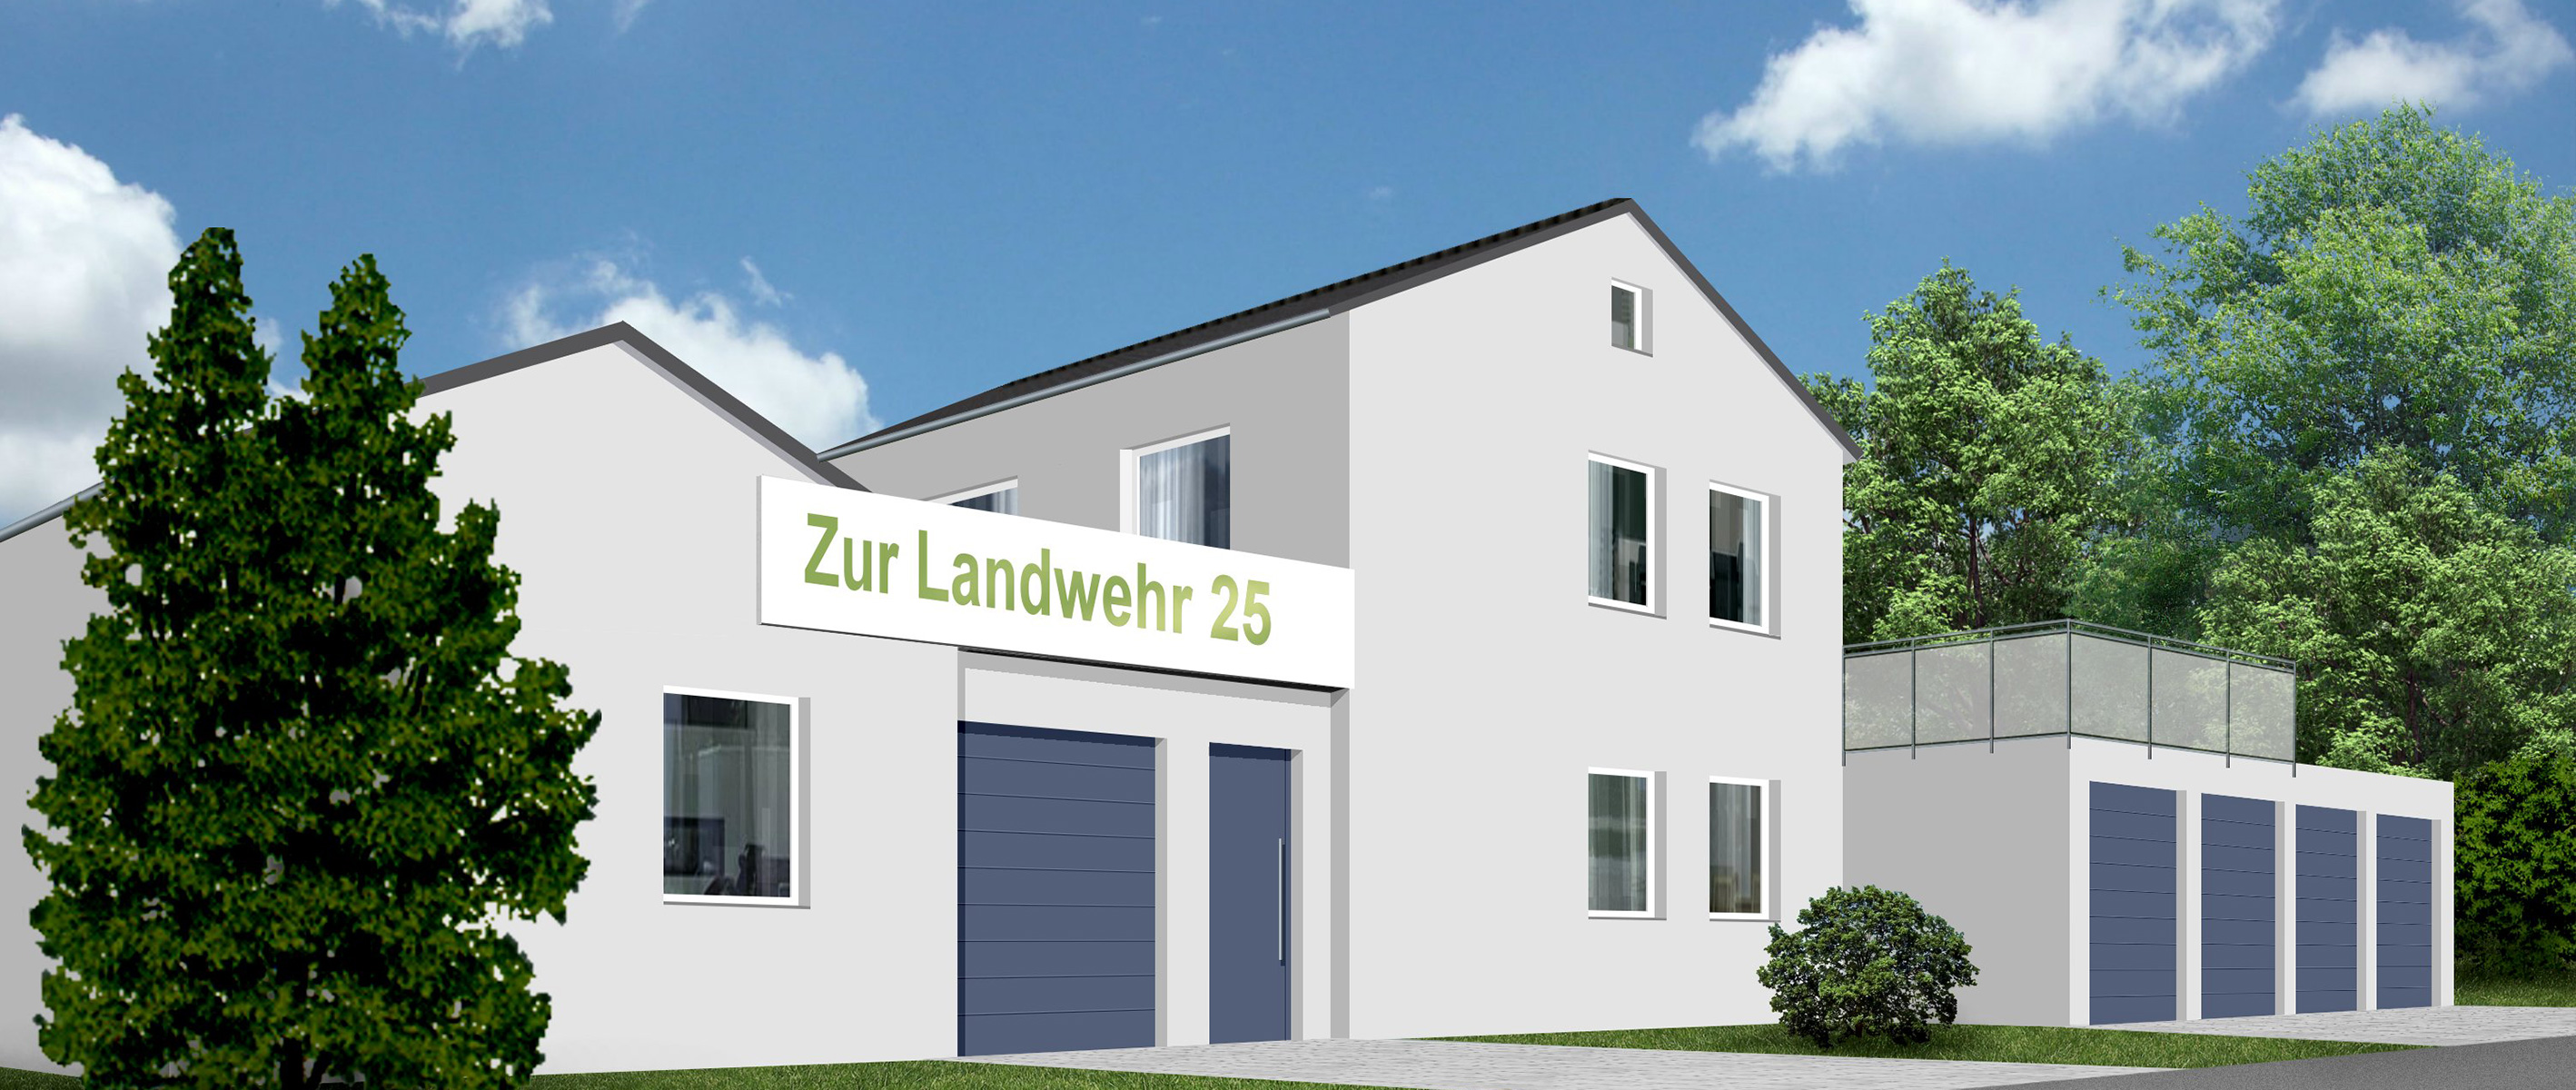 Der Lagermeister - Standort 2 Zur Landwehr 25